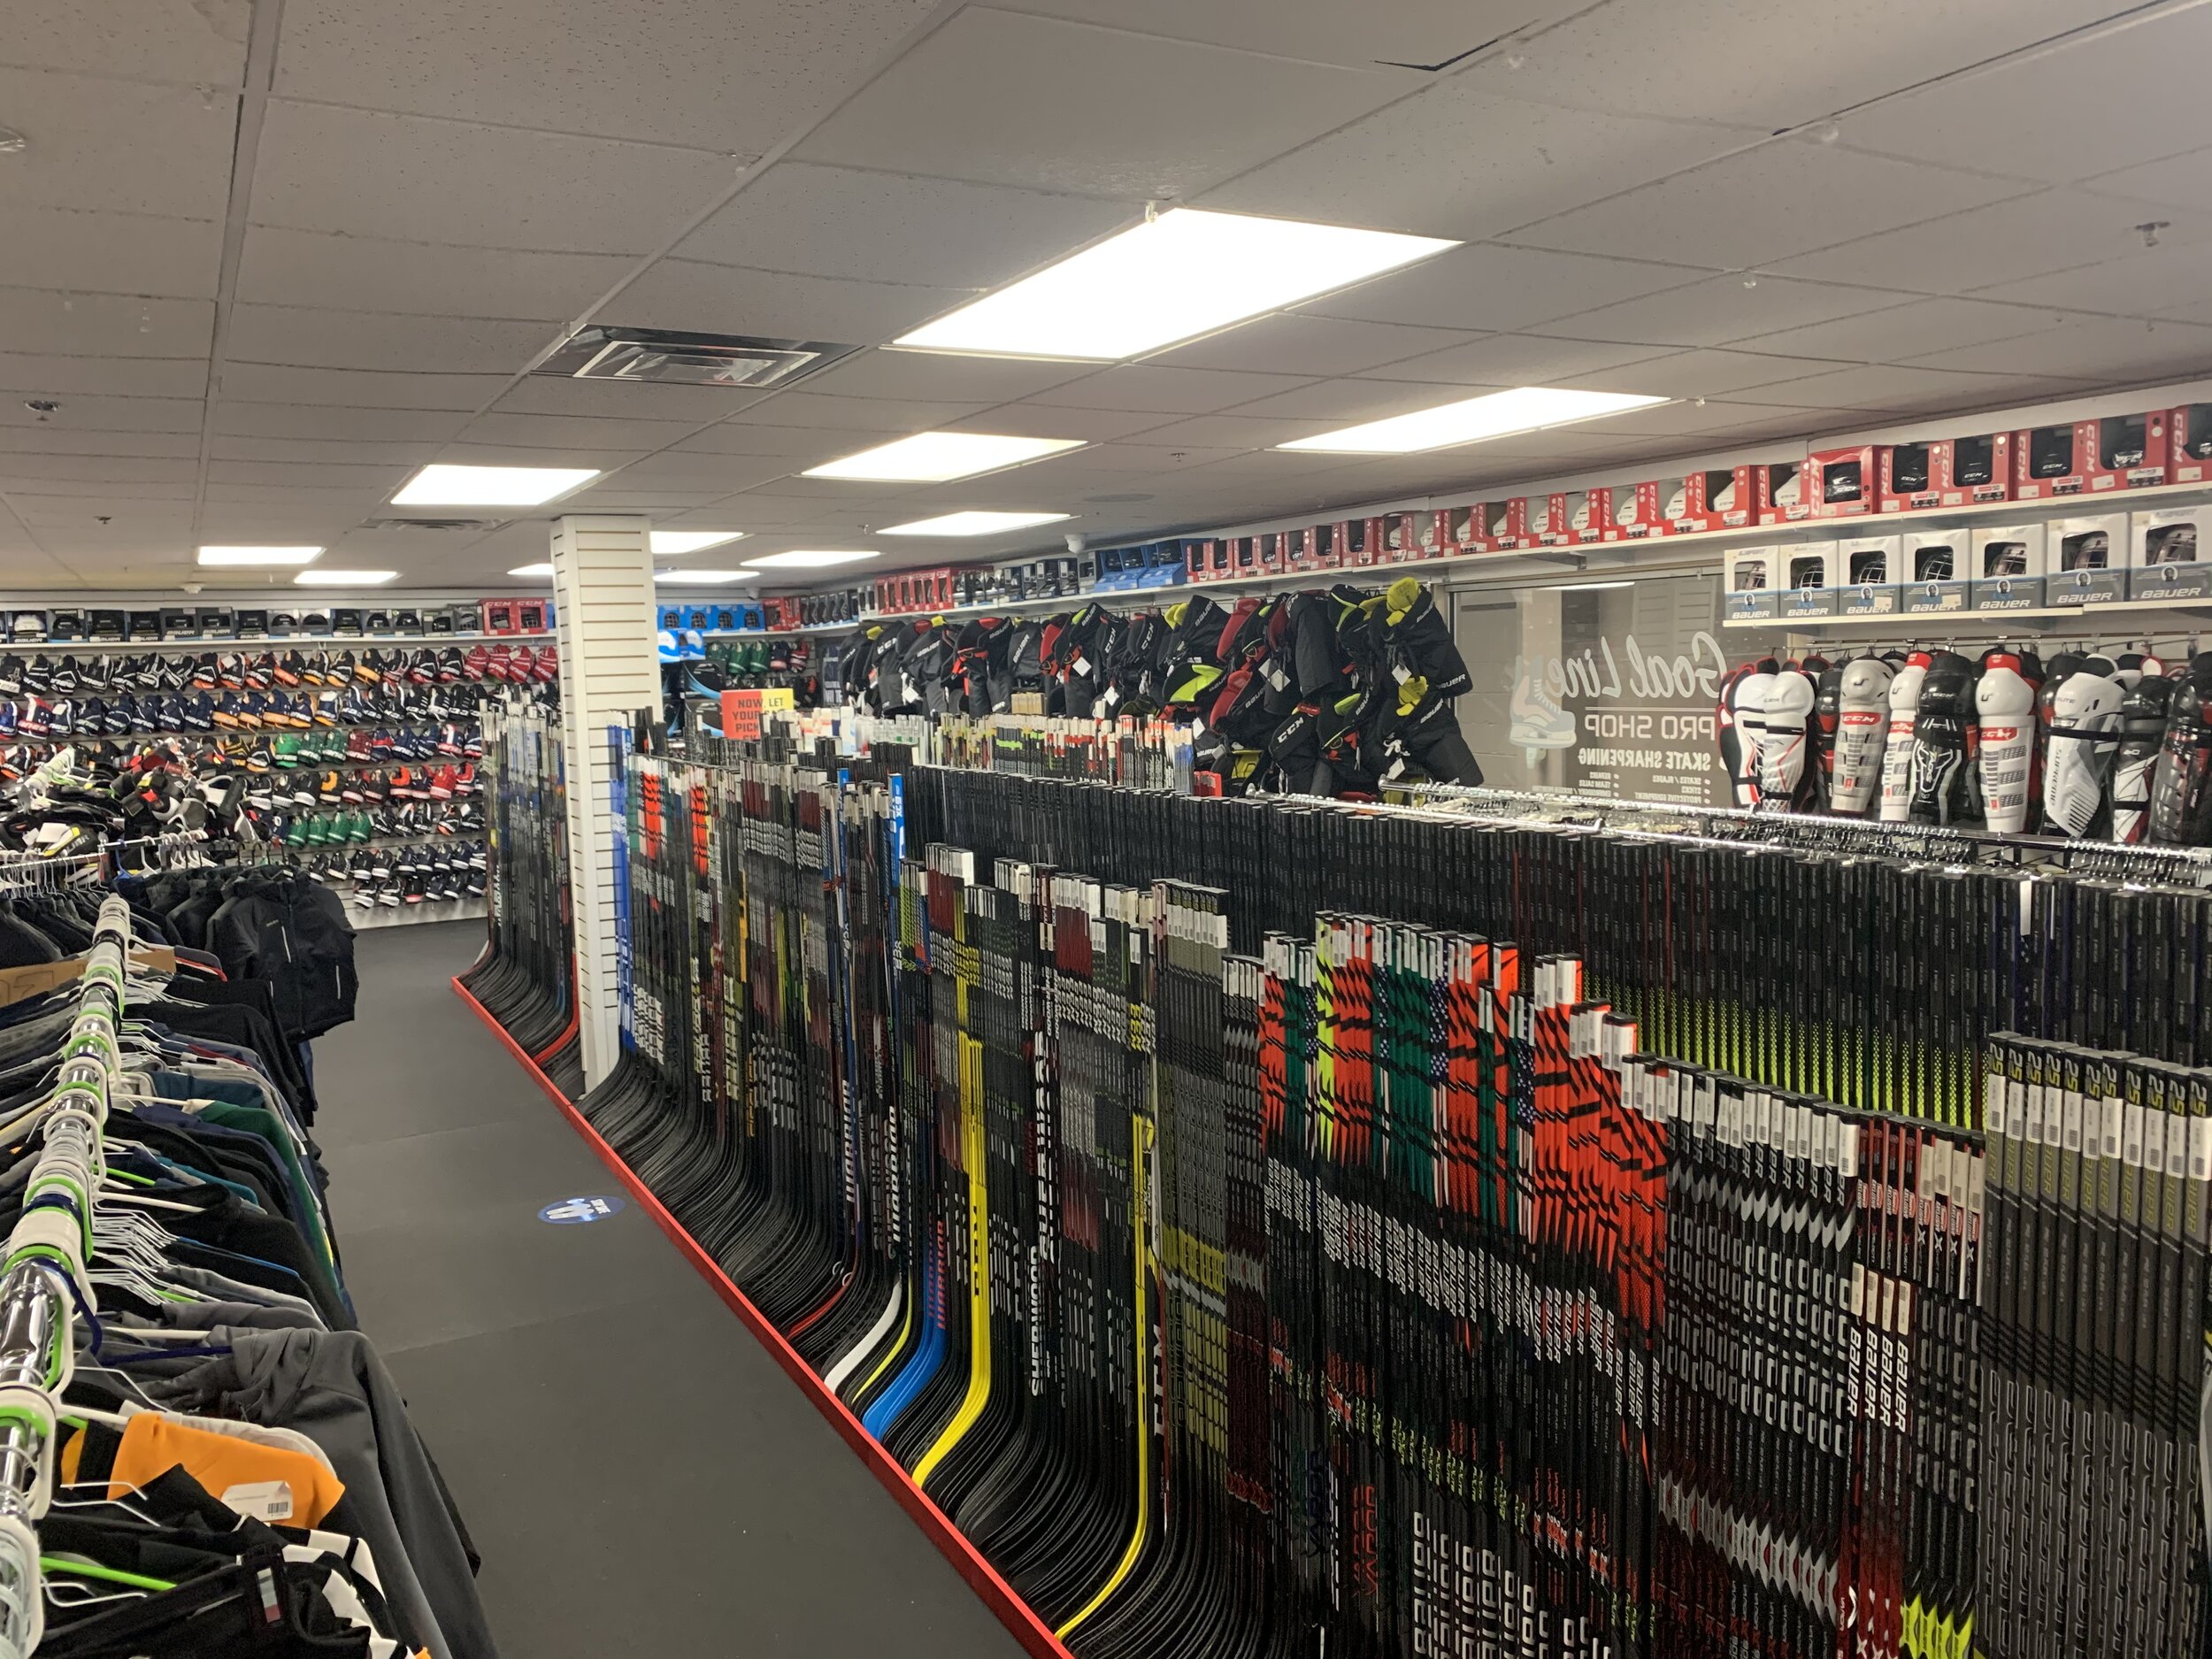 Goal Line Pro Shop